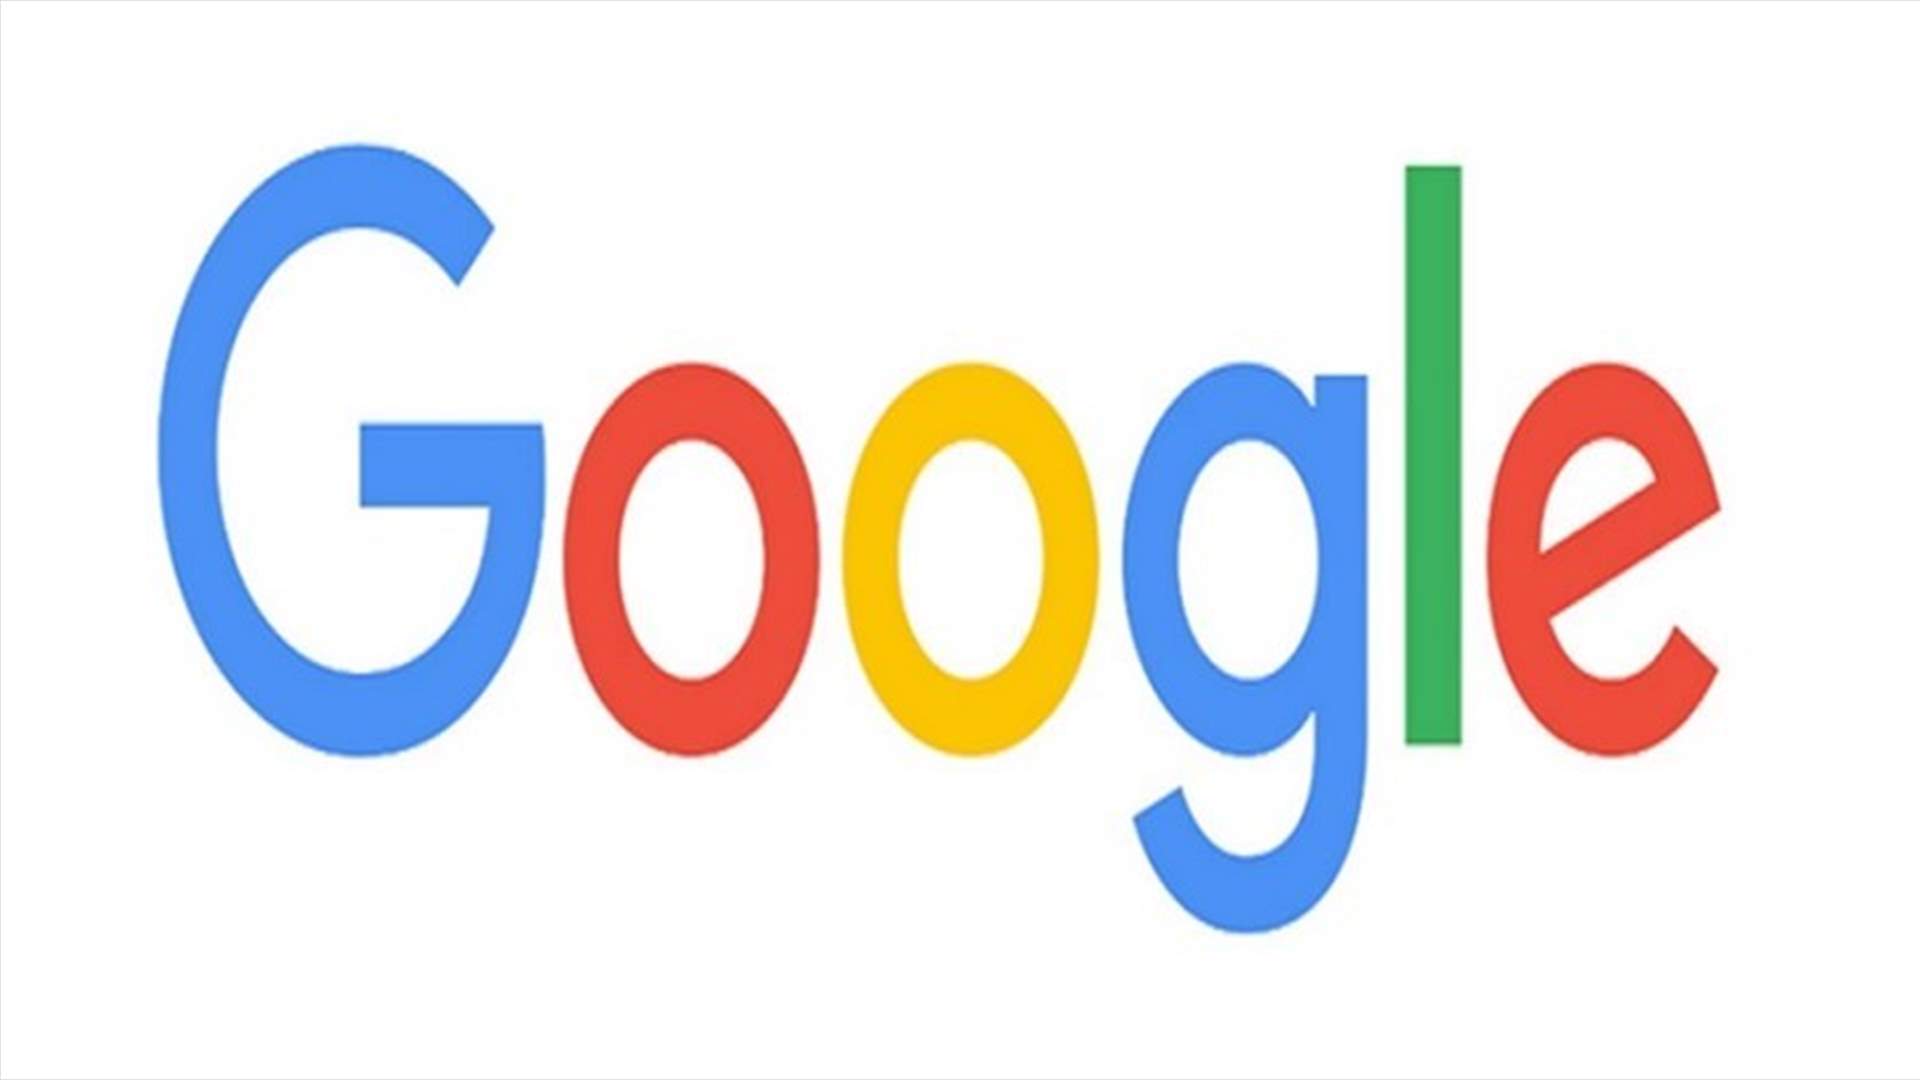 Google celebrates Lebanon’s Independence